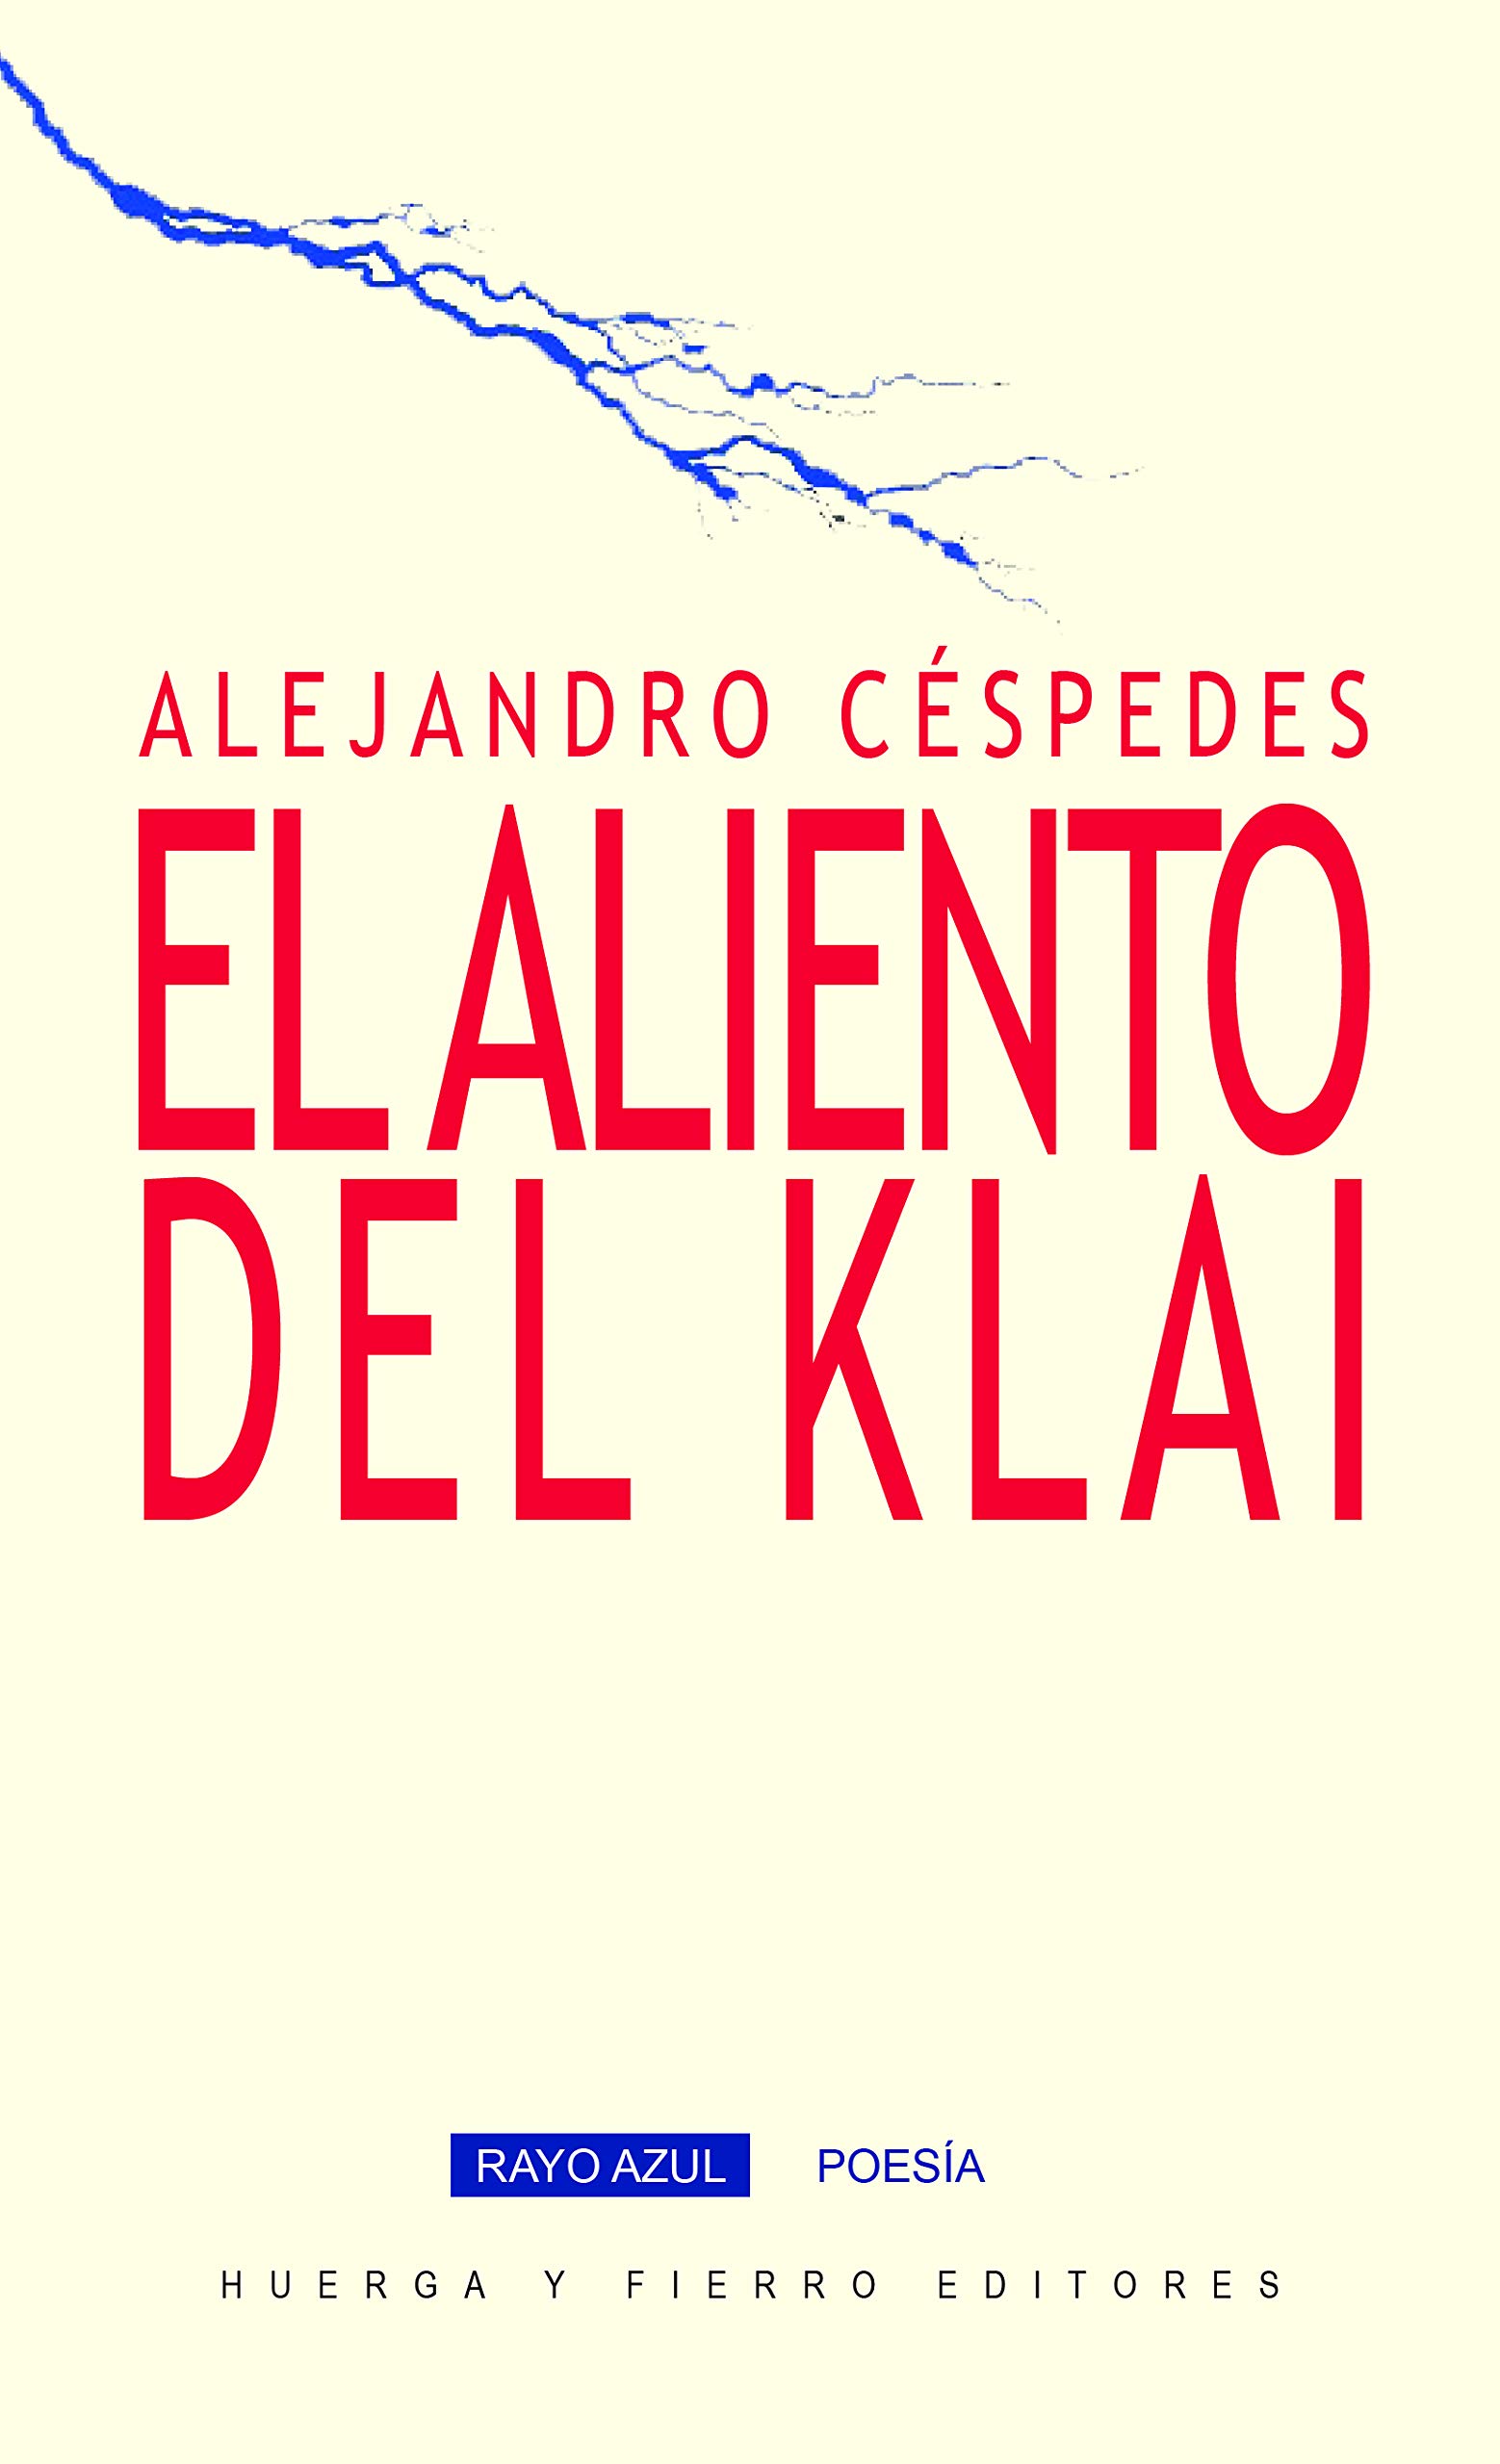 5 poemas de Alejandro Céspedes